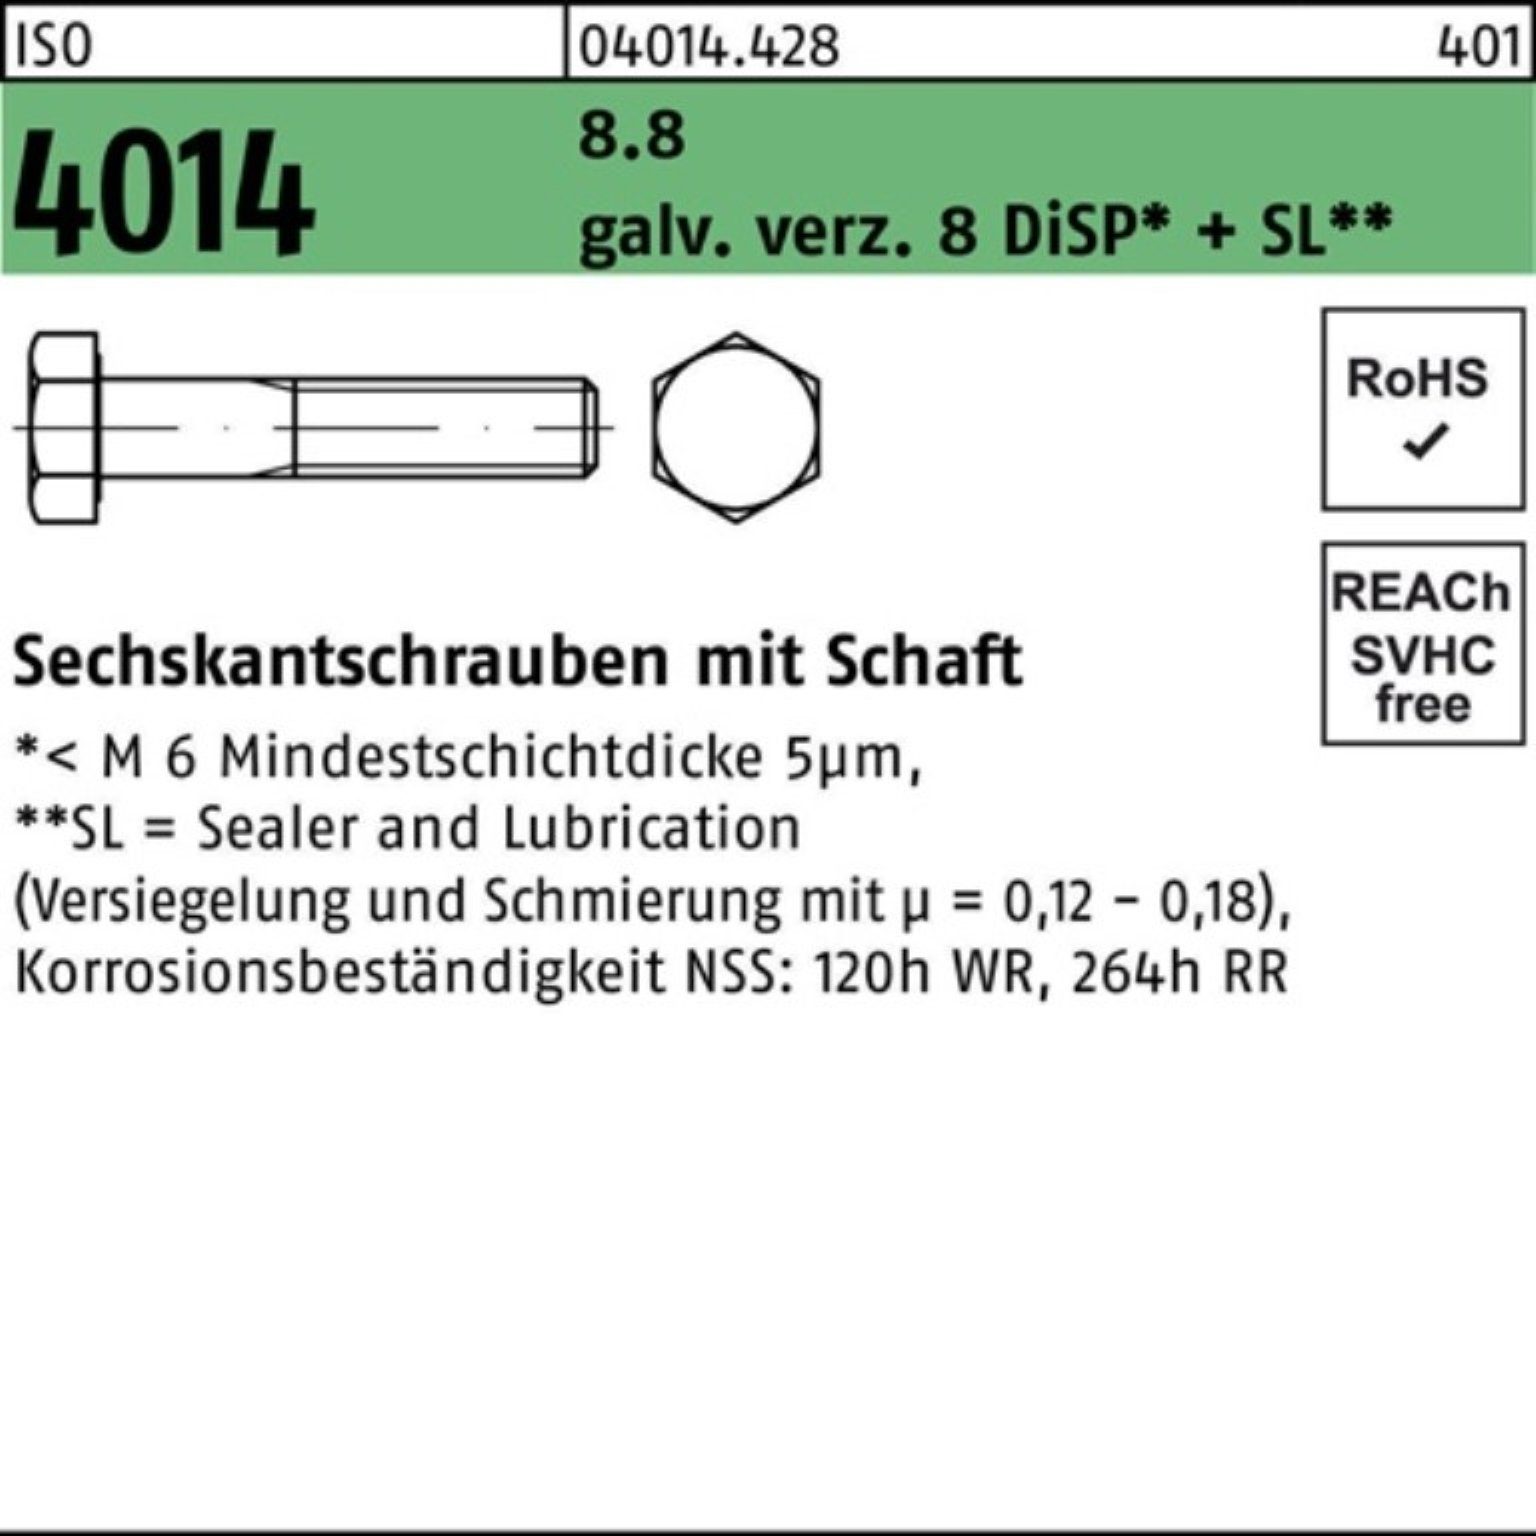 Bufab Sechskantschraube 100er M20x170 4014 galv.verz. 8.8 Pack ISO 8 Schaft Sechskantschraube